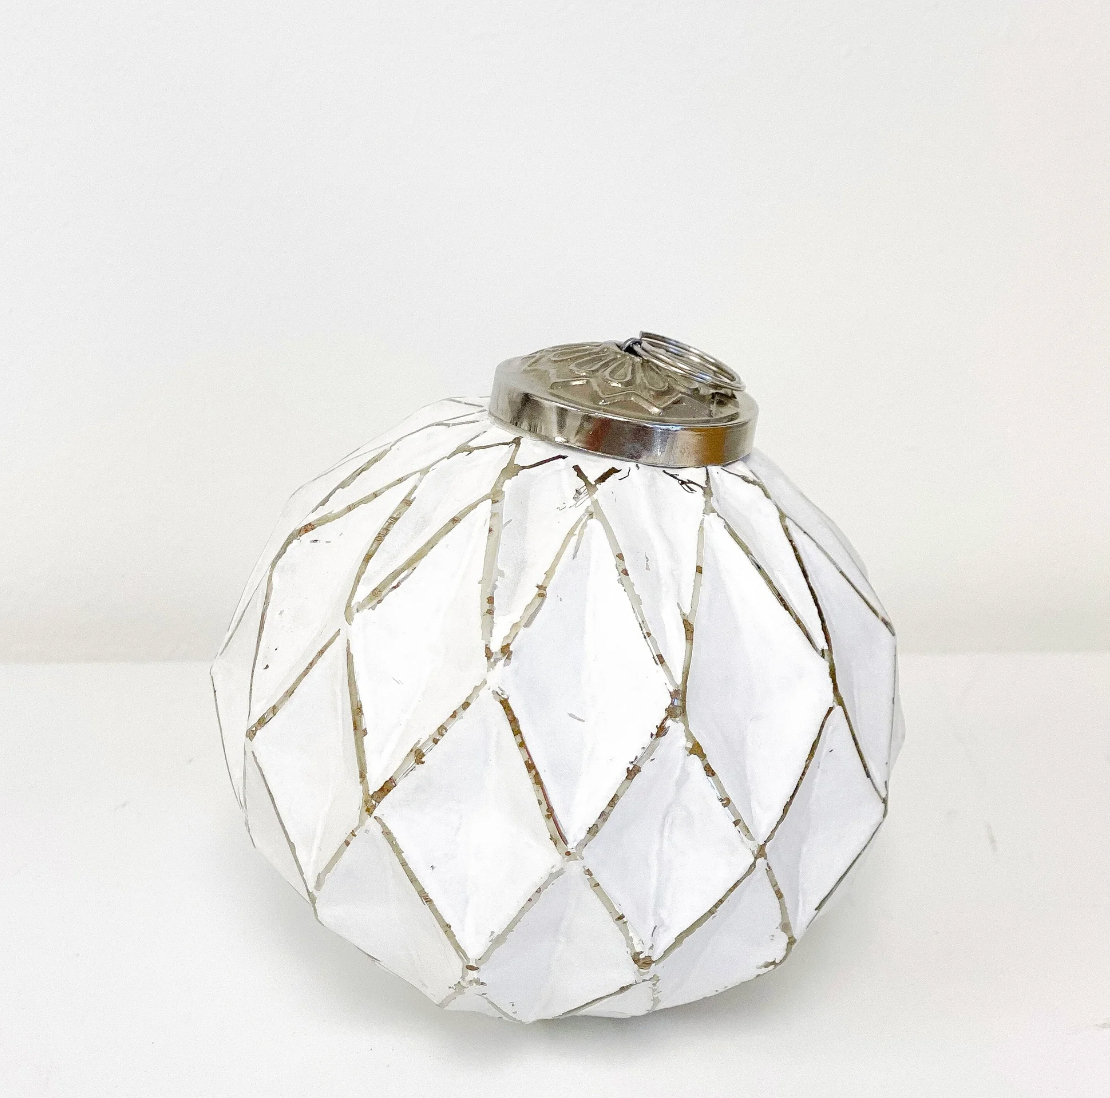 White Glass Ball Ornament - 4''